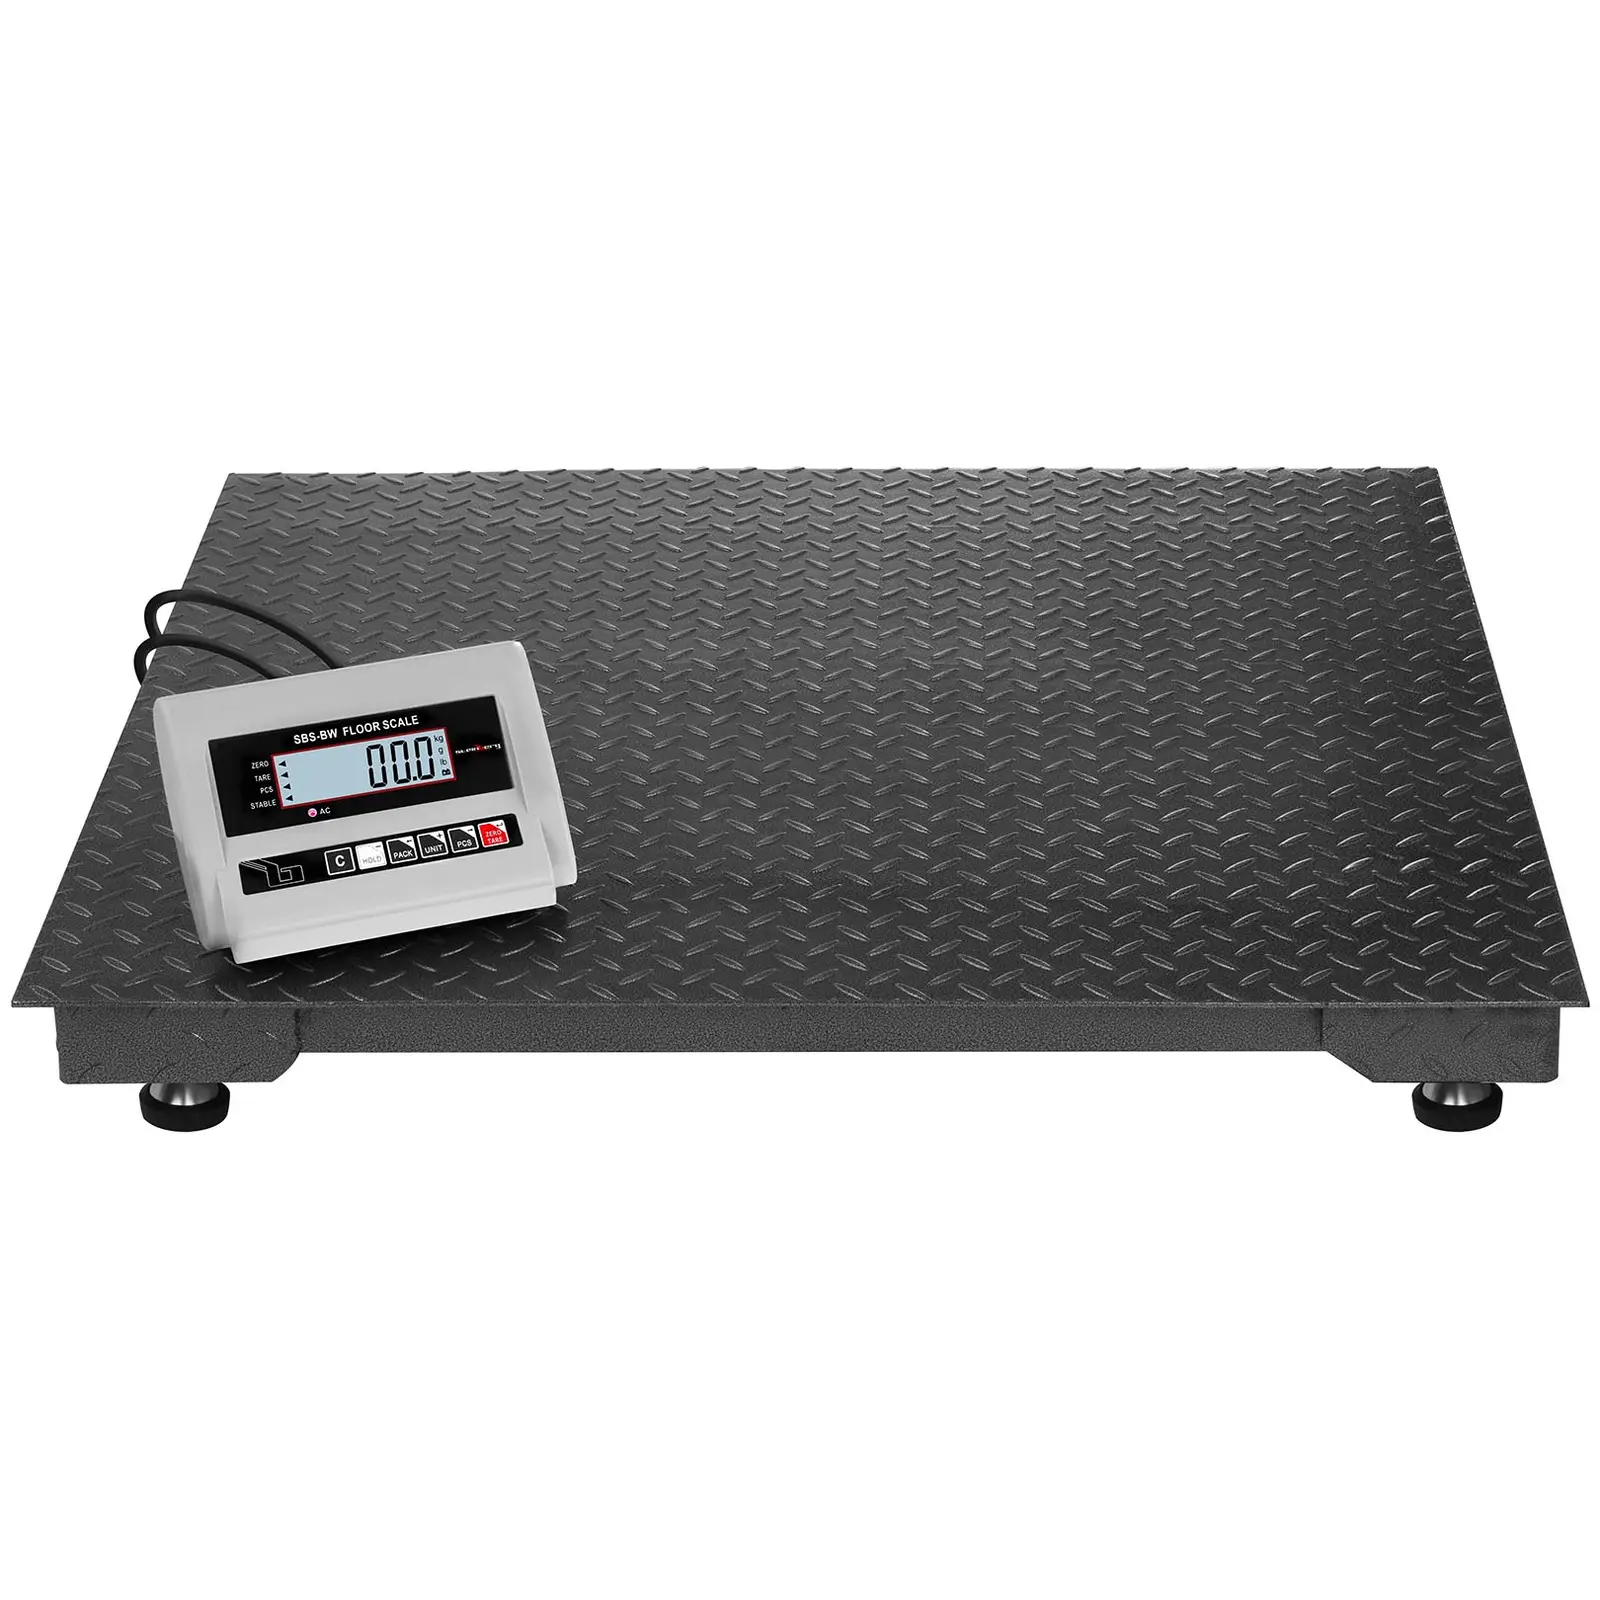 Podlahová váha - 5 t/2 000 g - LCD